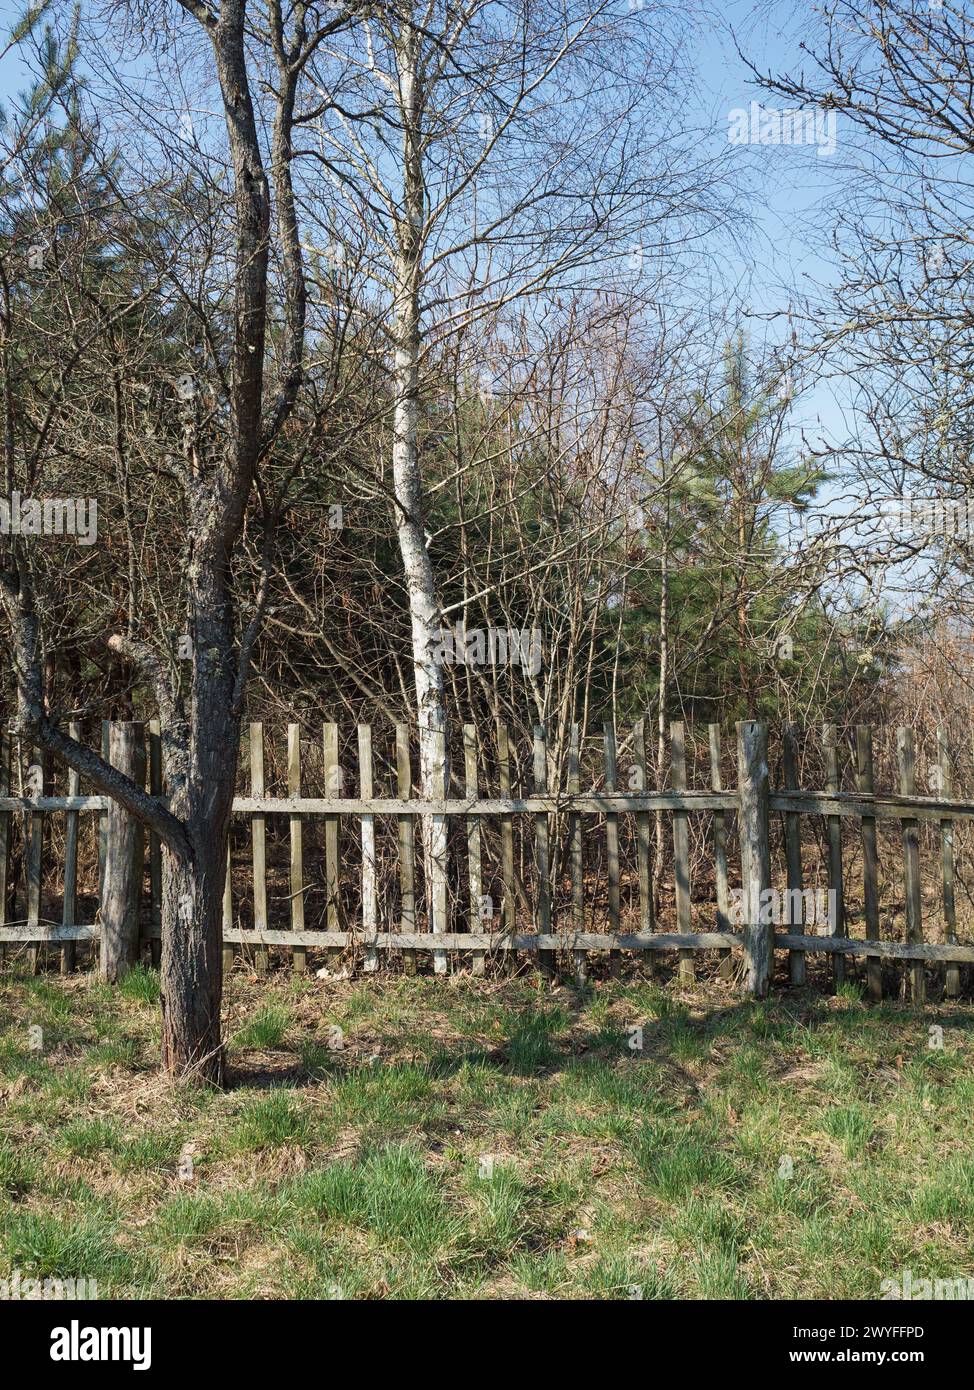 Vertikaler Schuss eines alten schäbigen Streifenzaun in einem verlassenen Garten bei hellem Sonnenschein. Ein Baum vorne, der andere hinter dem Zaun. Stockfoto